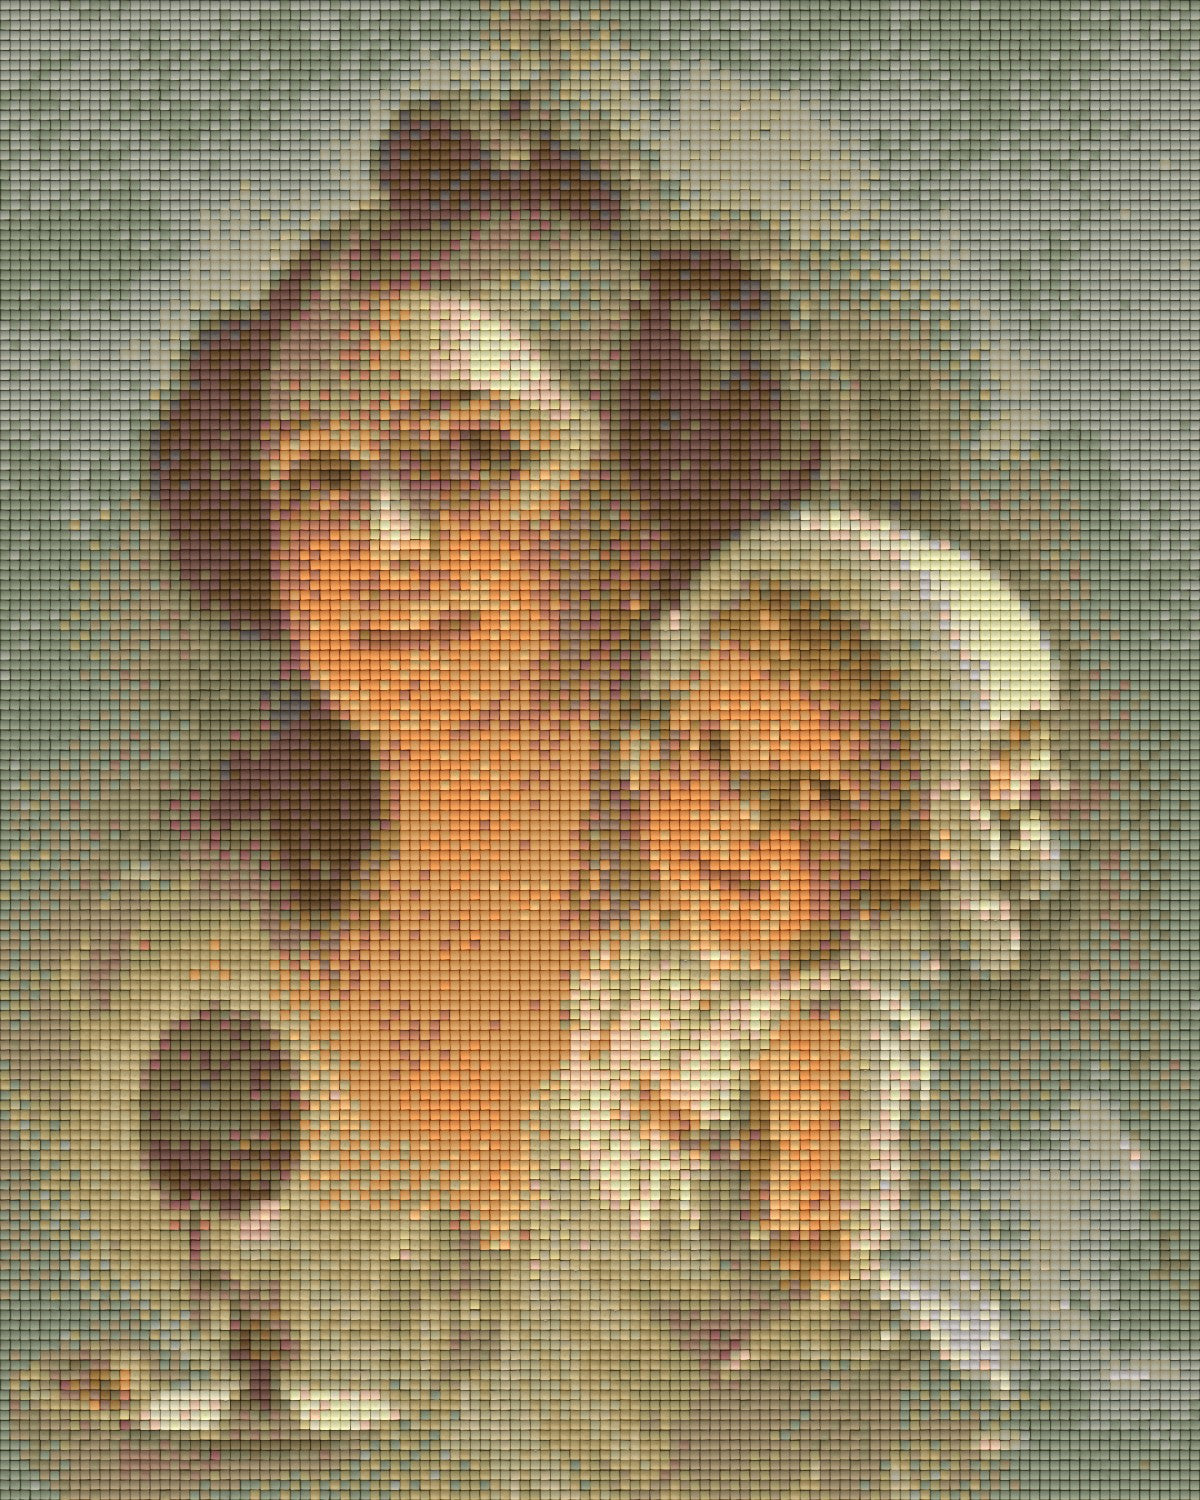 Pixelhobby Klassik Vorlage - Mutter und Kind